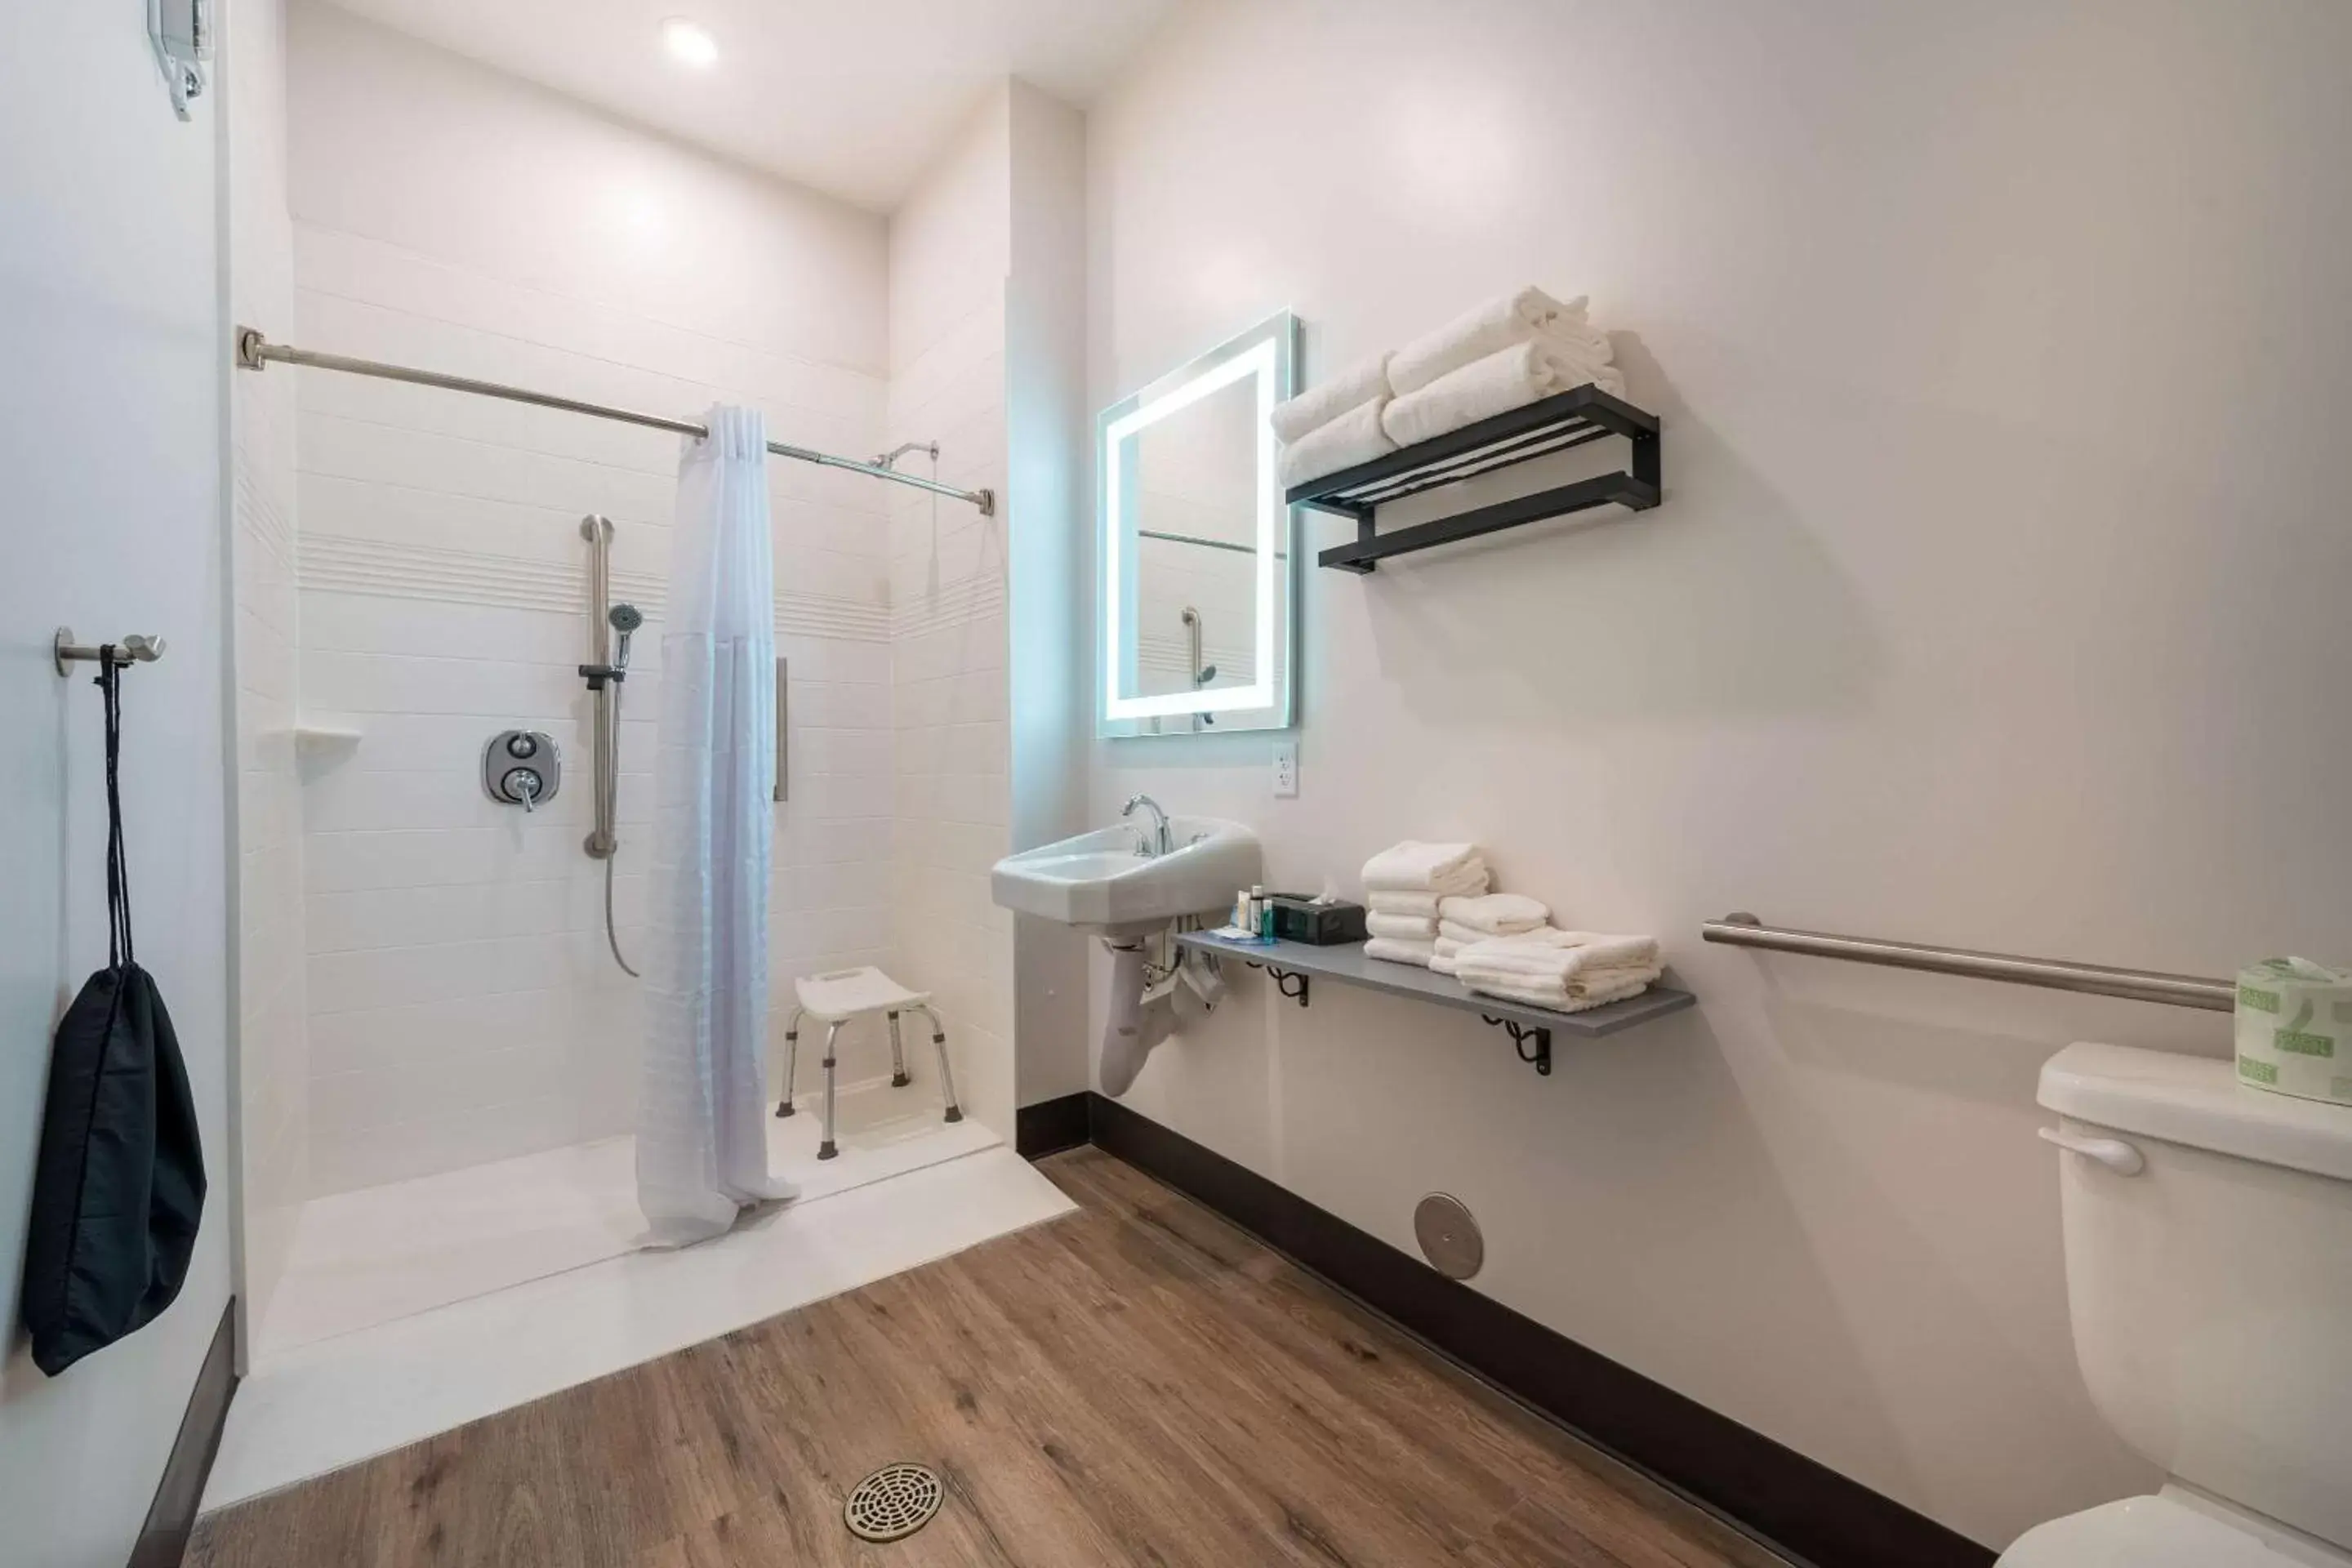 Bedroom, Bathroom in MainStay Suites Colorado Springs East - Medical Center Area